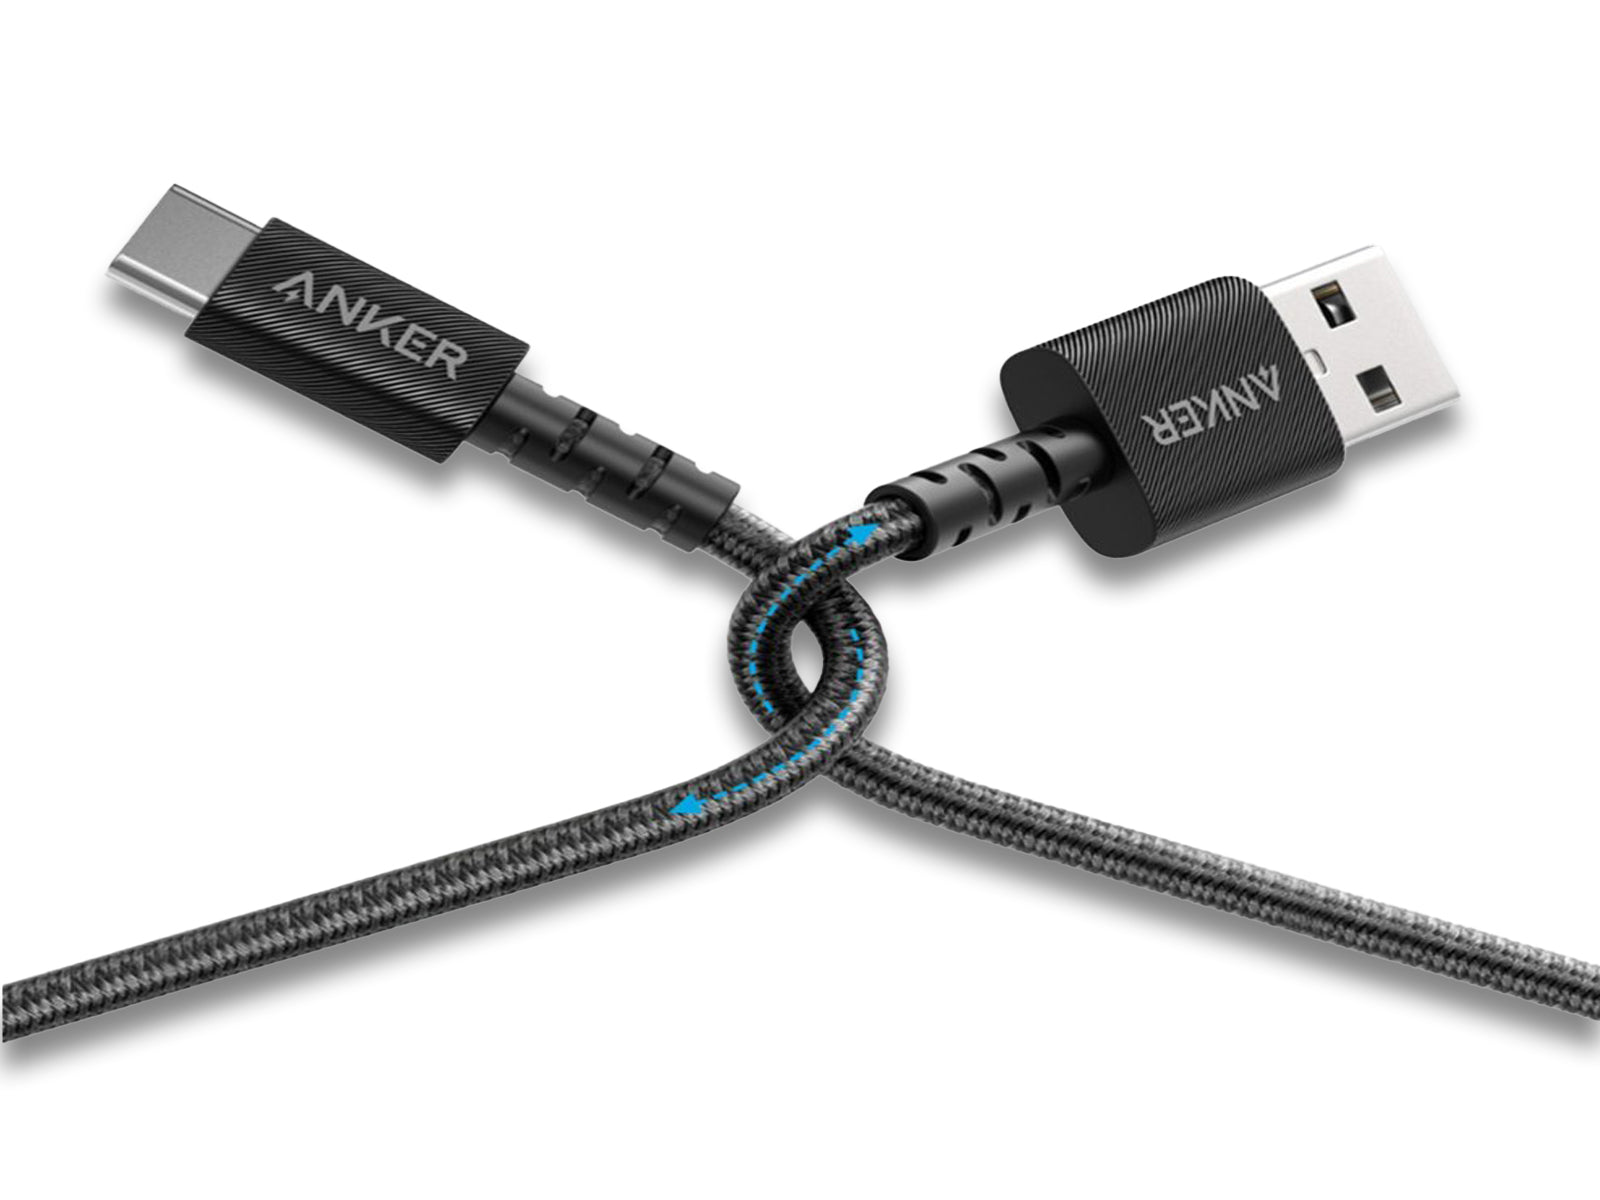 Anker-Powerline-USB-A-to-USB-C USB & TYPE C